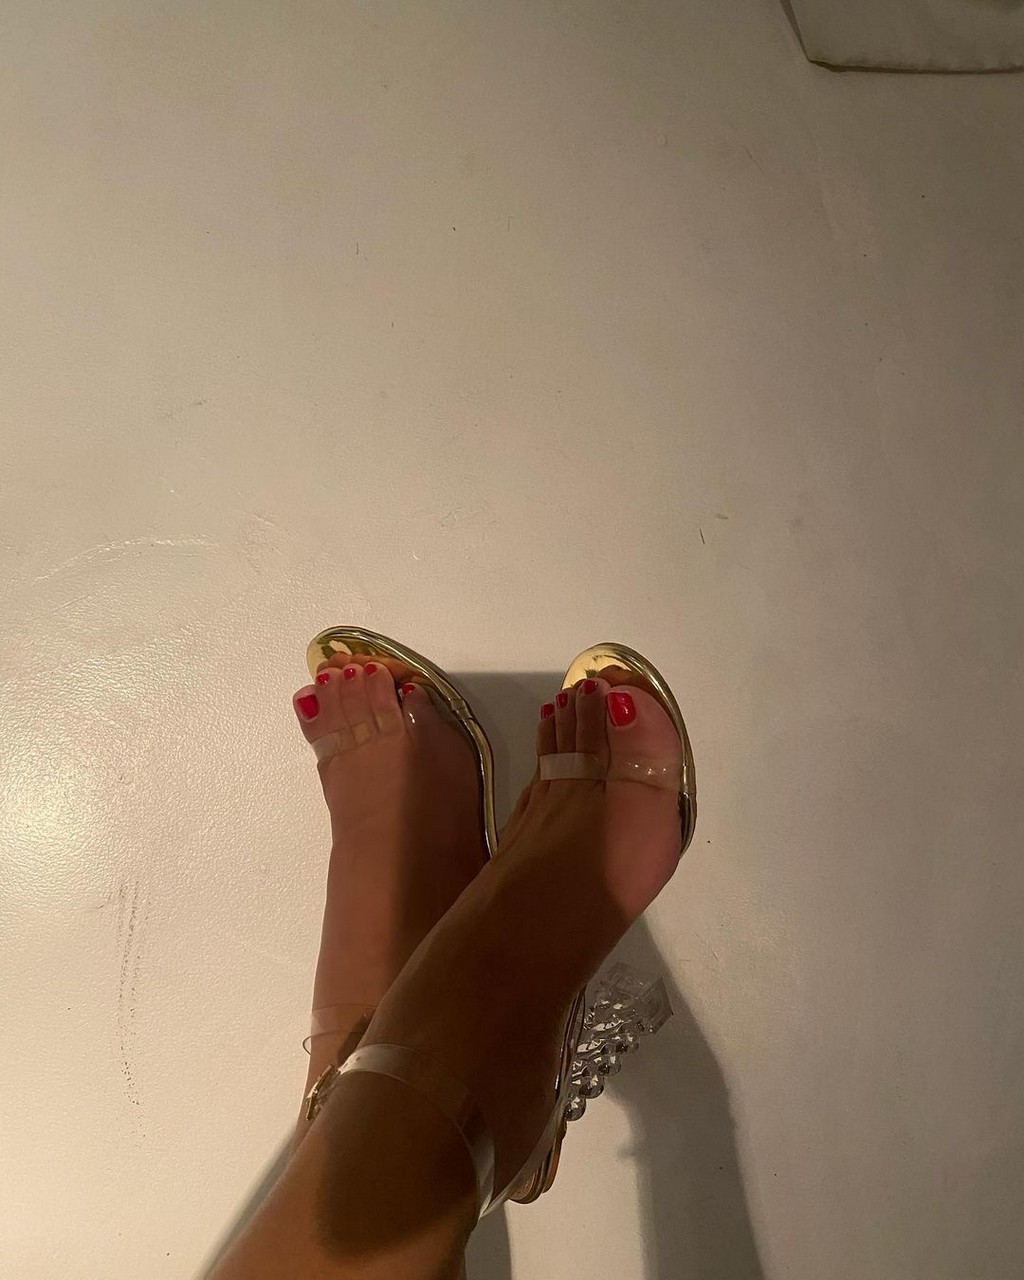 Tefi Valenzuela Feet